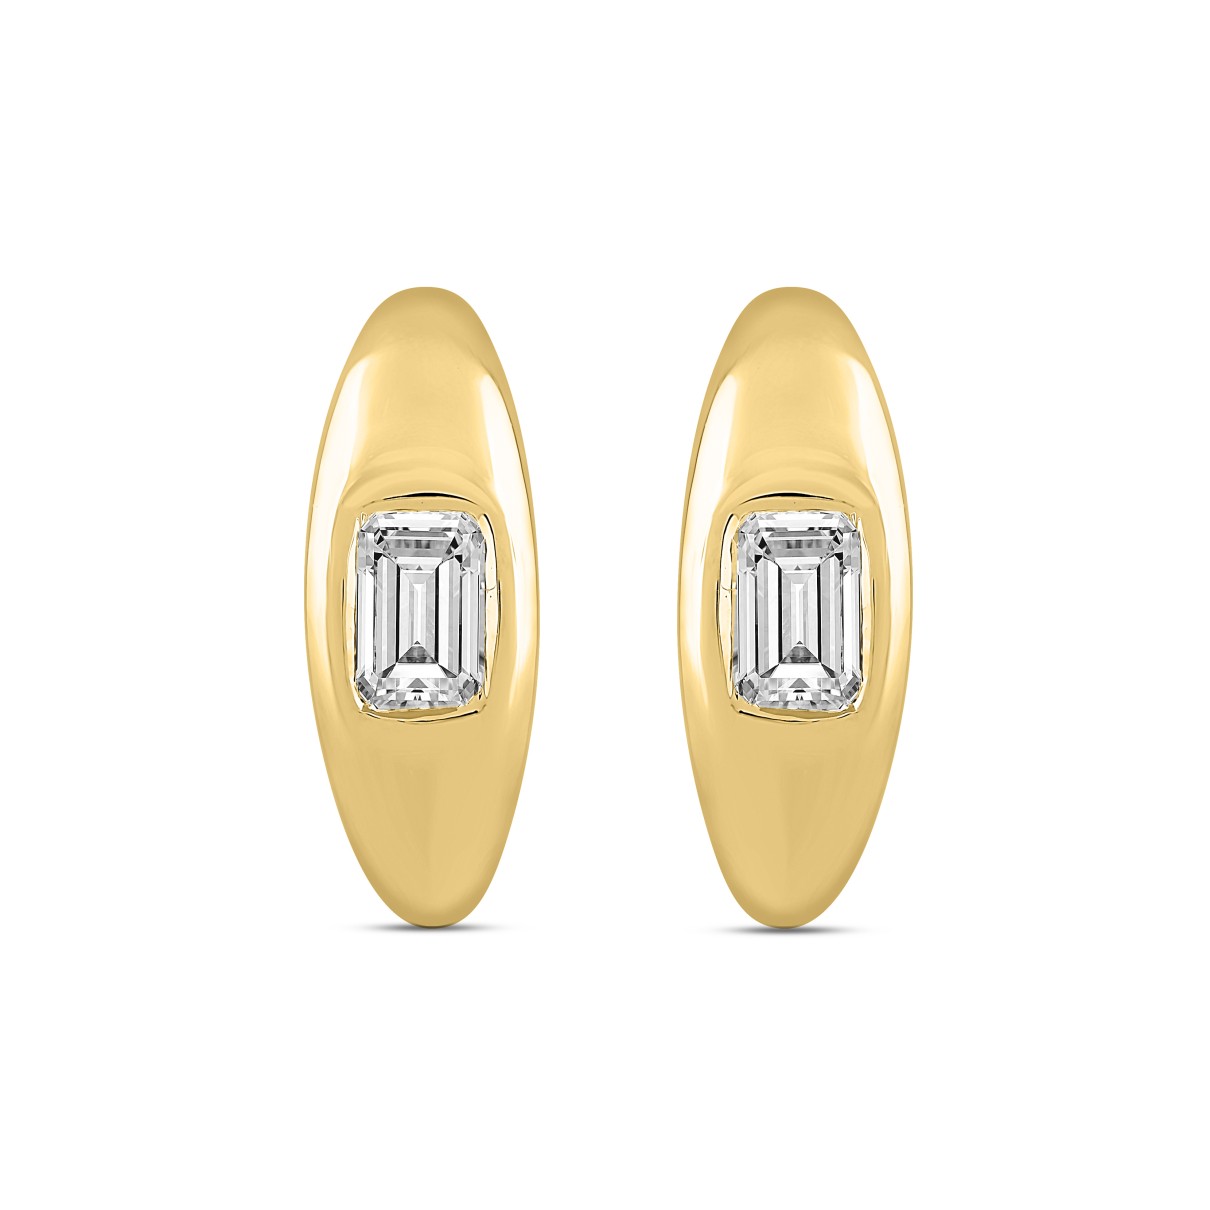 LADIES HOOP EARRINGS  2CT EMERALD DIAMOND 14K YELLOW GOLD